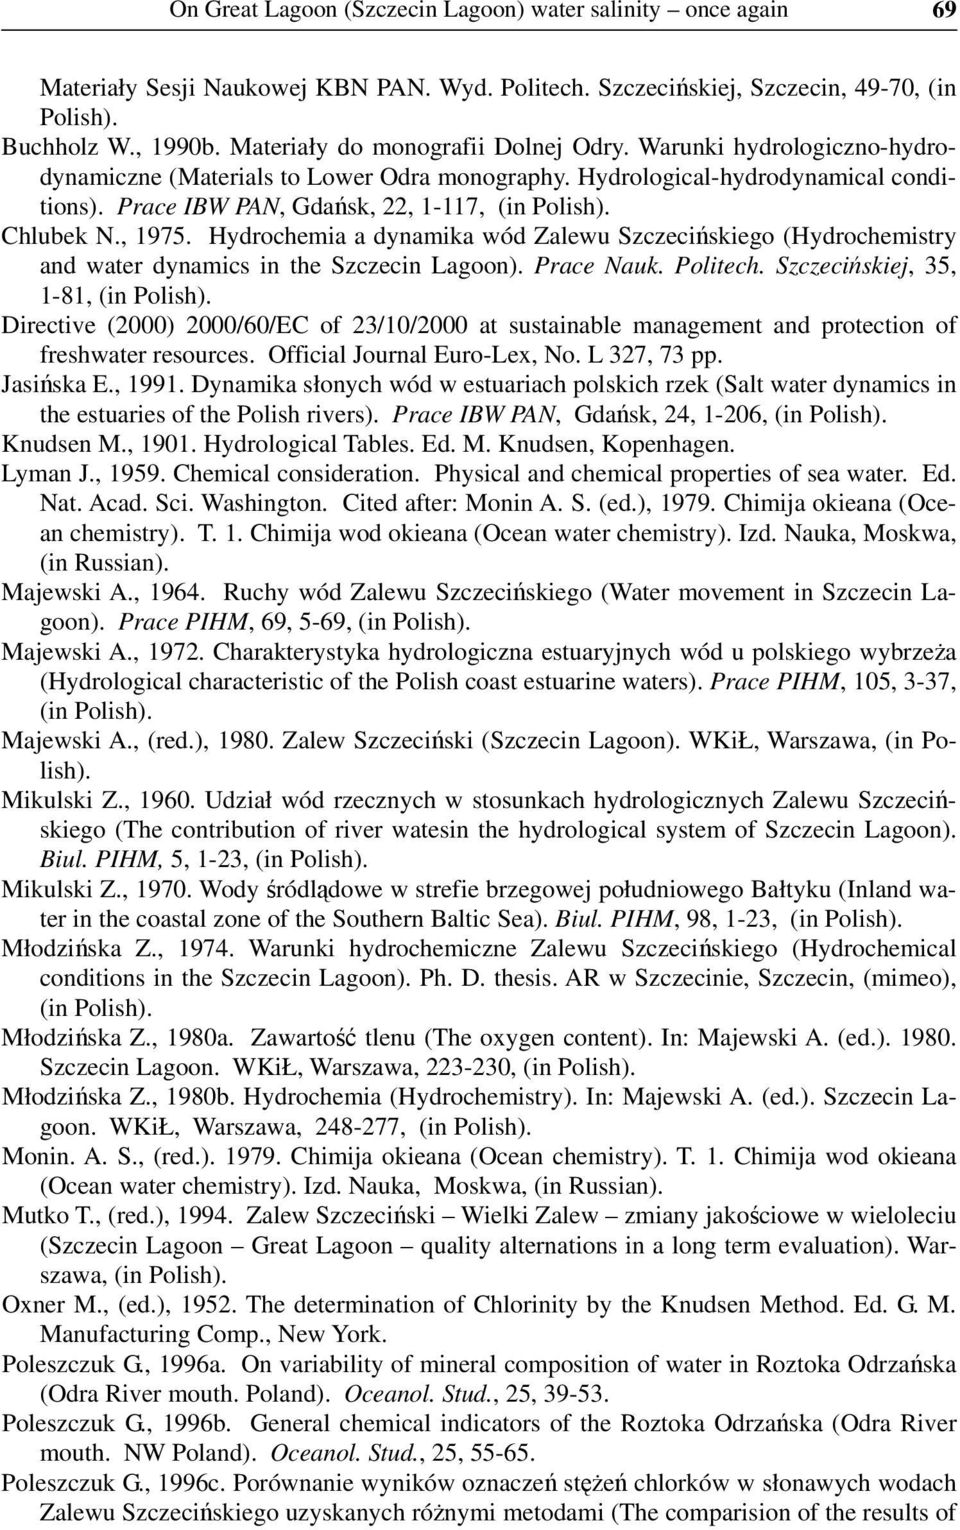 Chlubek N., 1975. Hydrochemia a dynamika wód Zalewu Szczecińskiego (Hydrochemistry and water dynamics in the Szczecin Lagoon). Prace Nauk. Politech. Szczecińskiej, 35, 1-81, (in Polish).